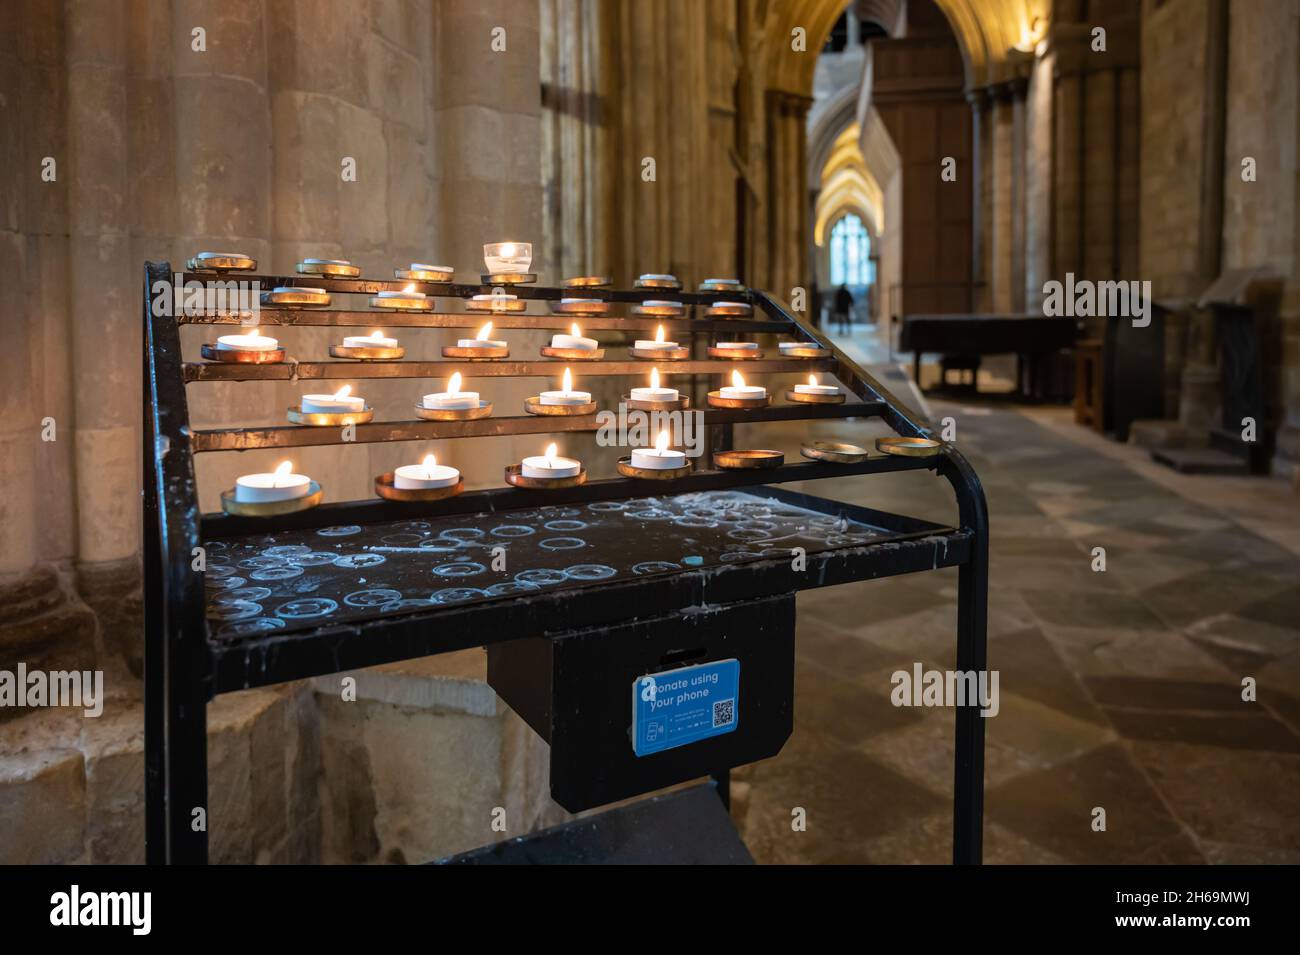 Porta candela votiva o di preghiera con scatola in offerta nella Cattedrale di Chichester a Chichester, Regno Unito. Grazie al Decano e Capitolo della Cattedrale di Chichester. Foto Stock